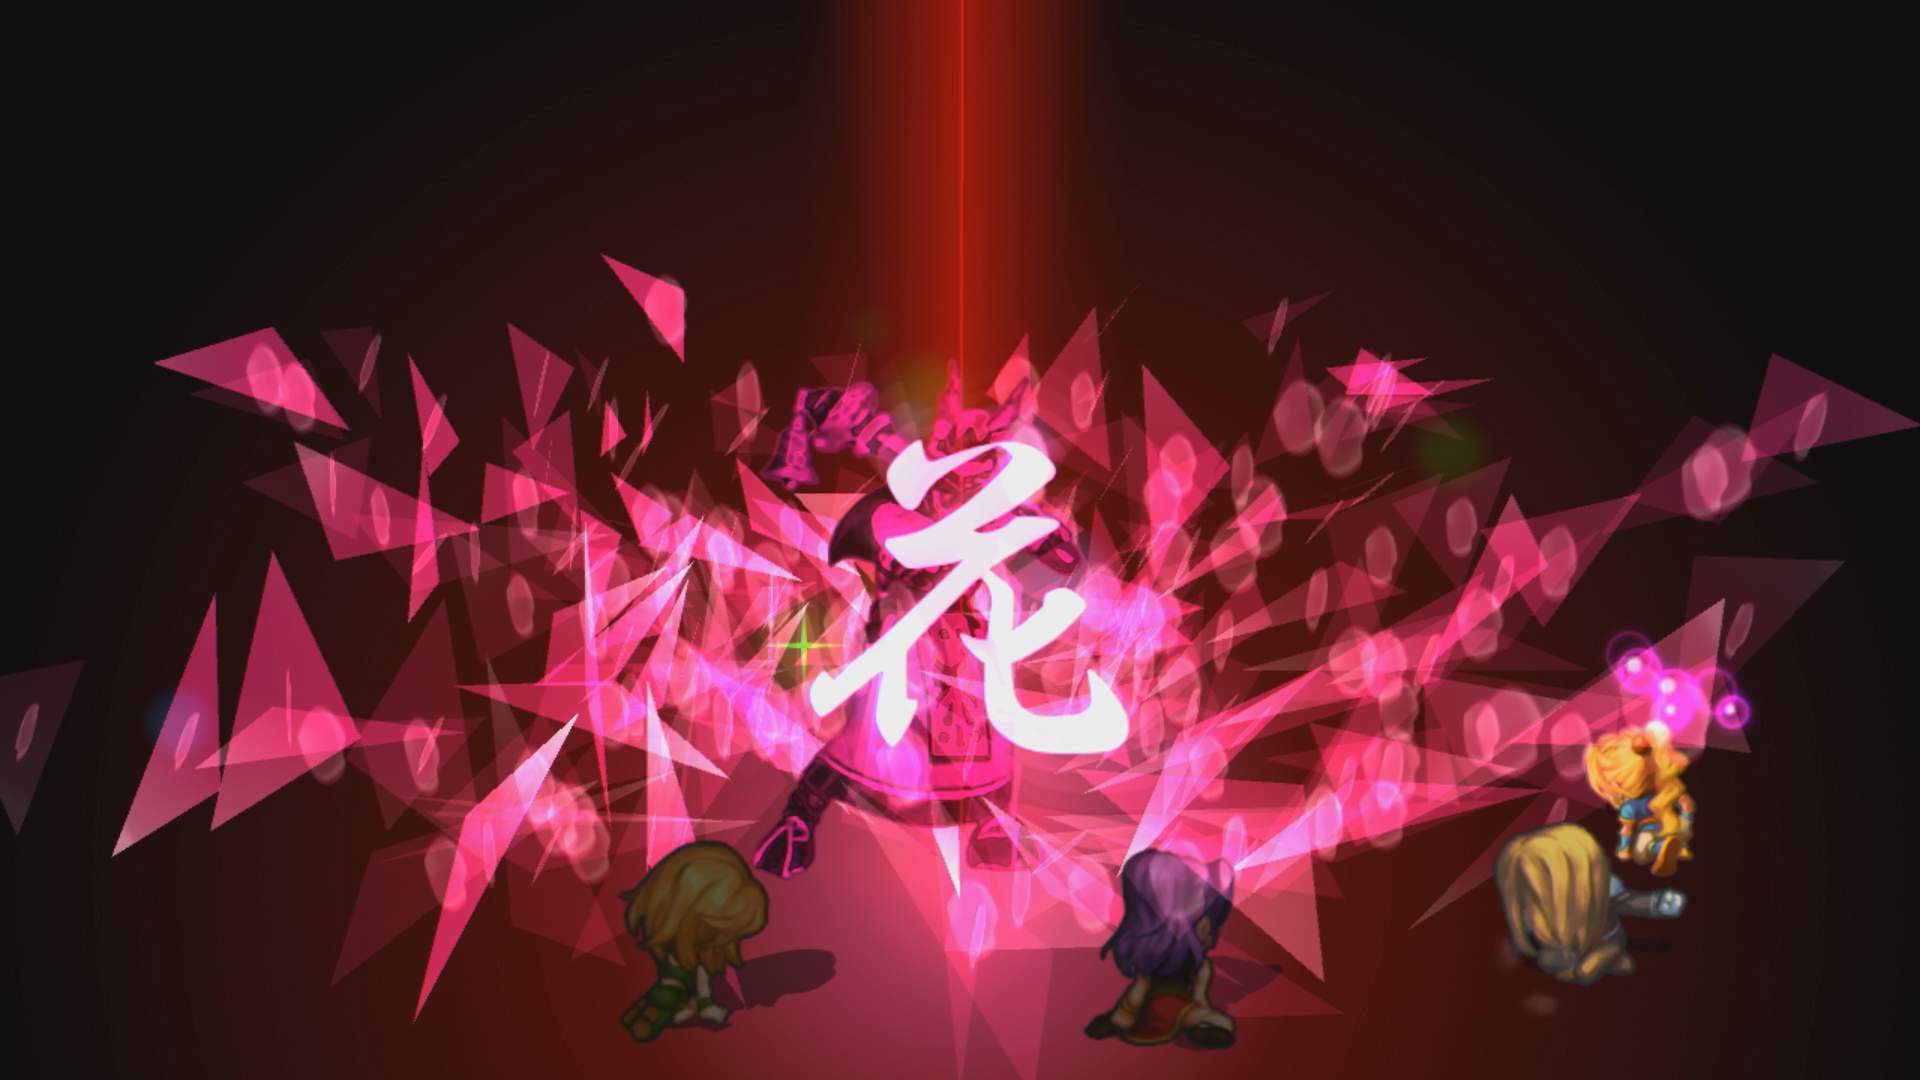 Tela de batalha de SaGa Frontier Remastered exibindo 4 personagens na frente, usando um ataque em um inimigo. O efeito do ataque exibe fragmentos cor-de-rosa com um ideograma no centro.